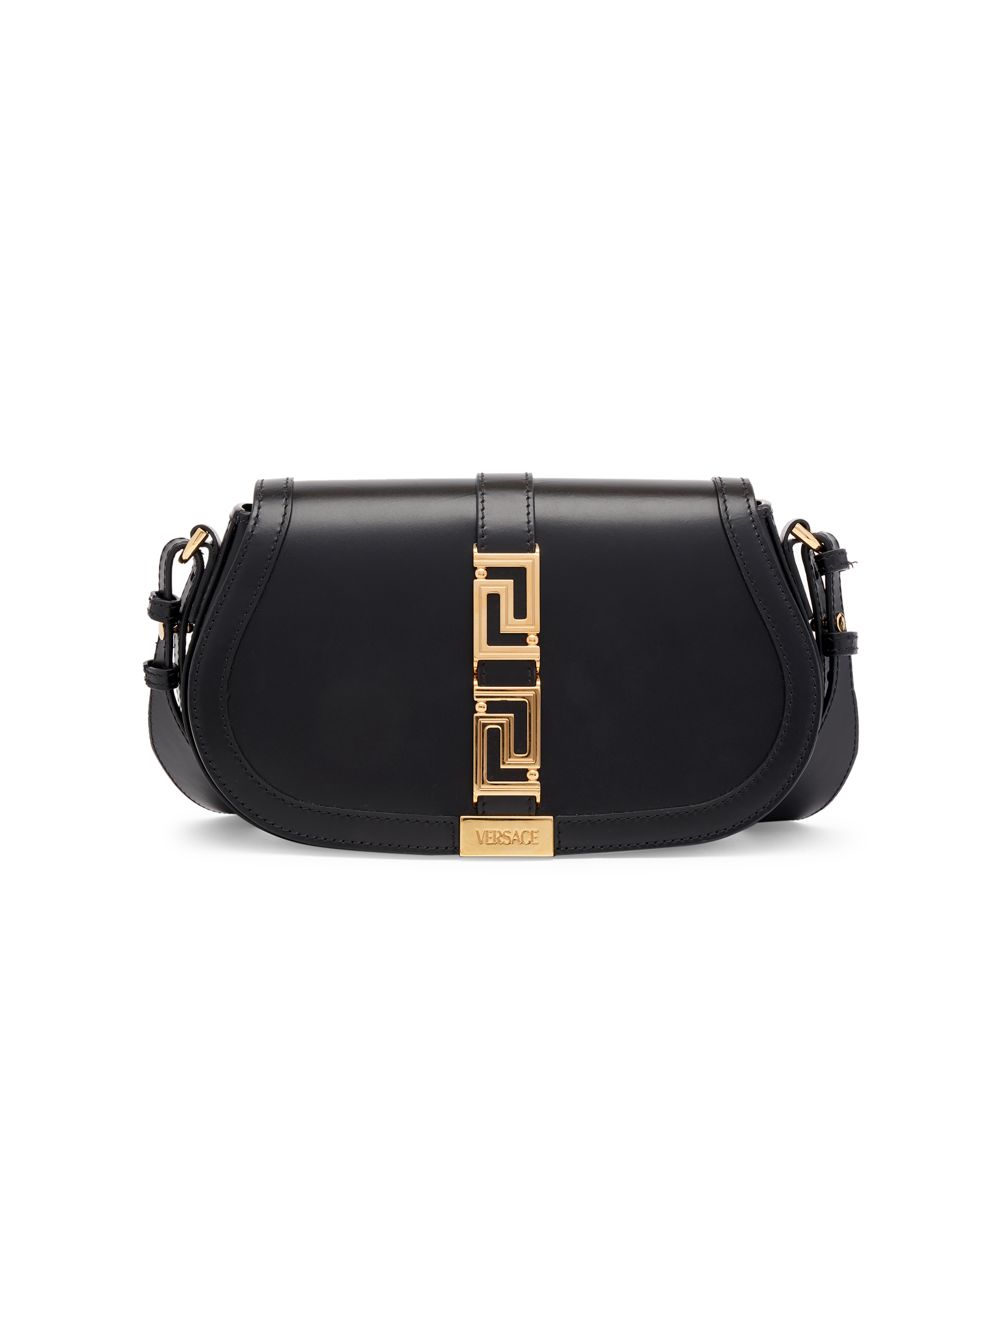 Кожаная сумка через плечо Greca Goddess Versace, черный